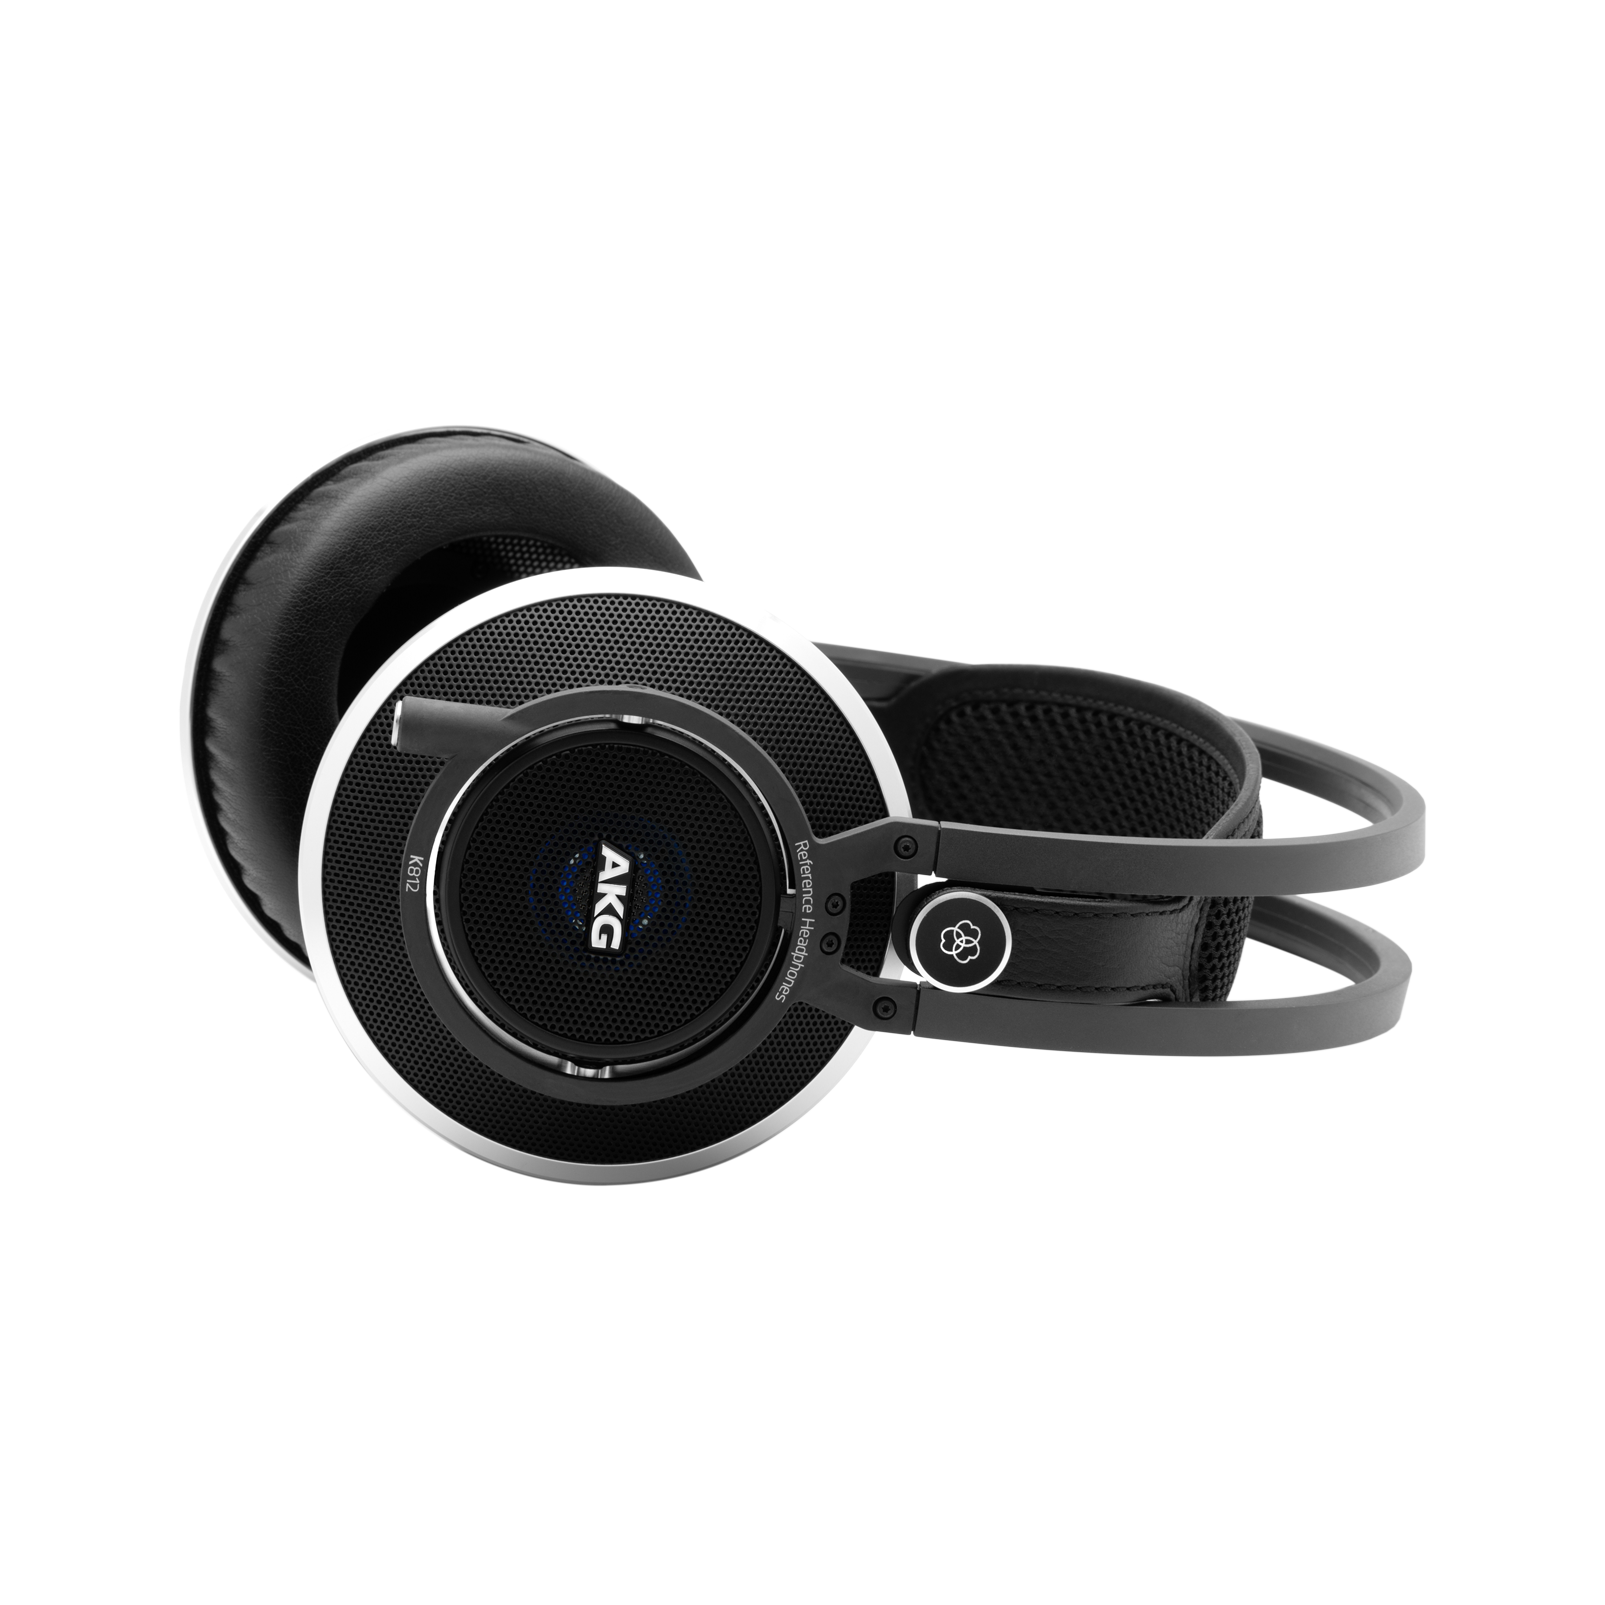 K812 - Black - Superior reference headphones - Detailshot 3